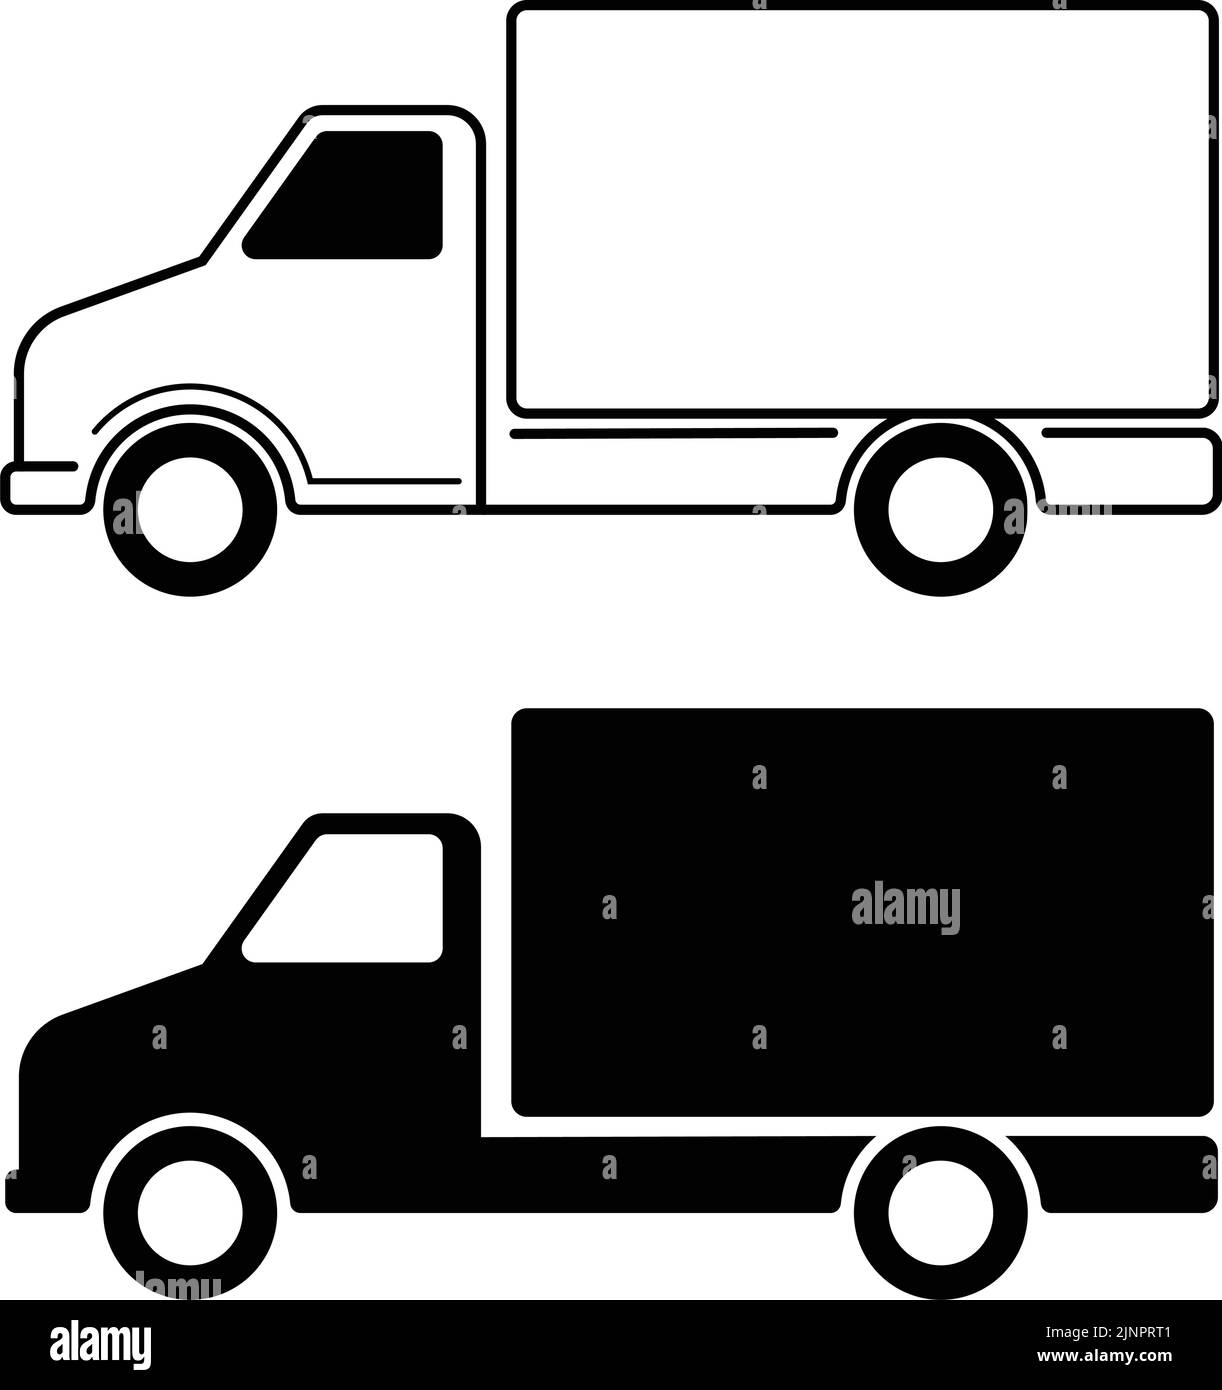 camiones de entrega iconos planos simples - ilustraciones vectoriales Ilustración del Vector